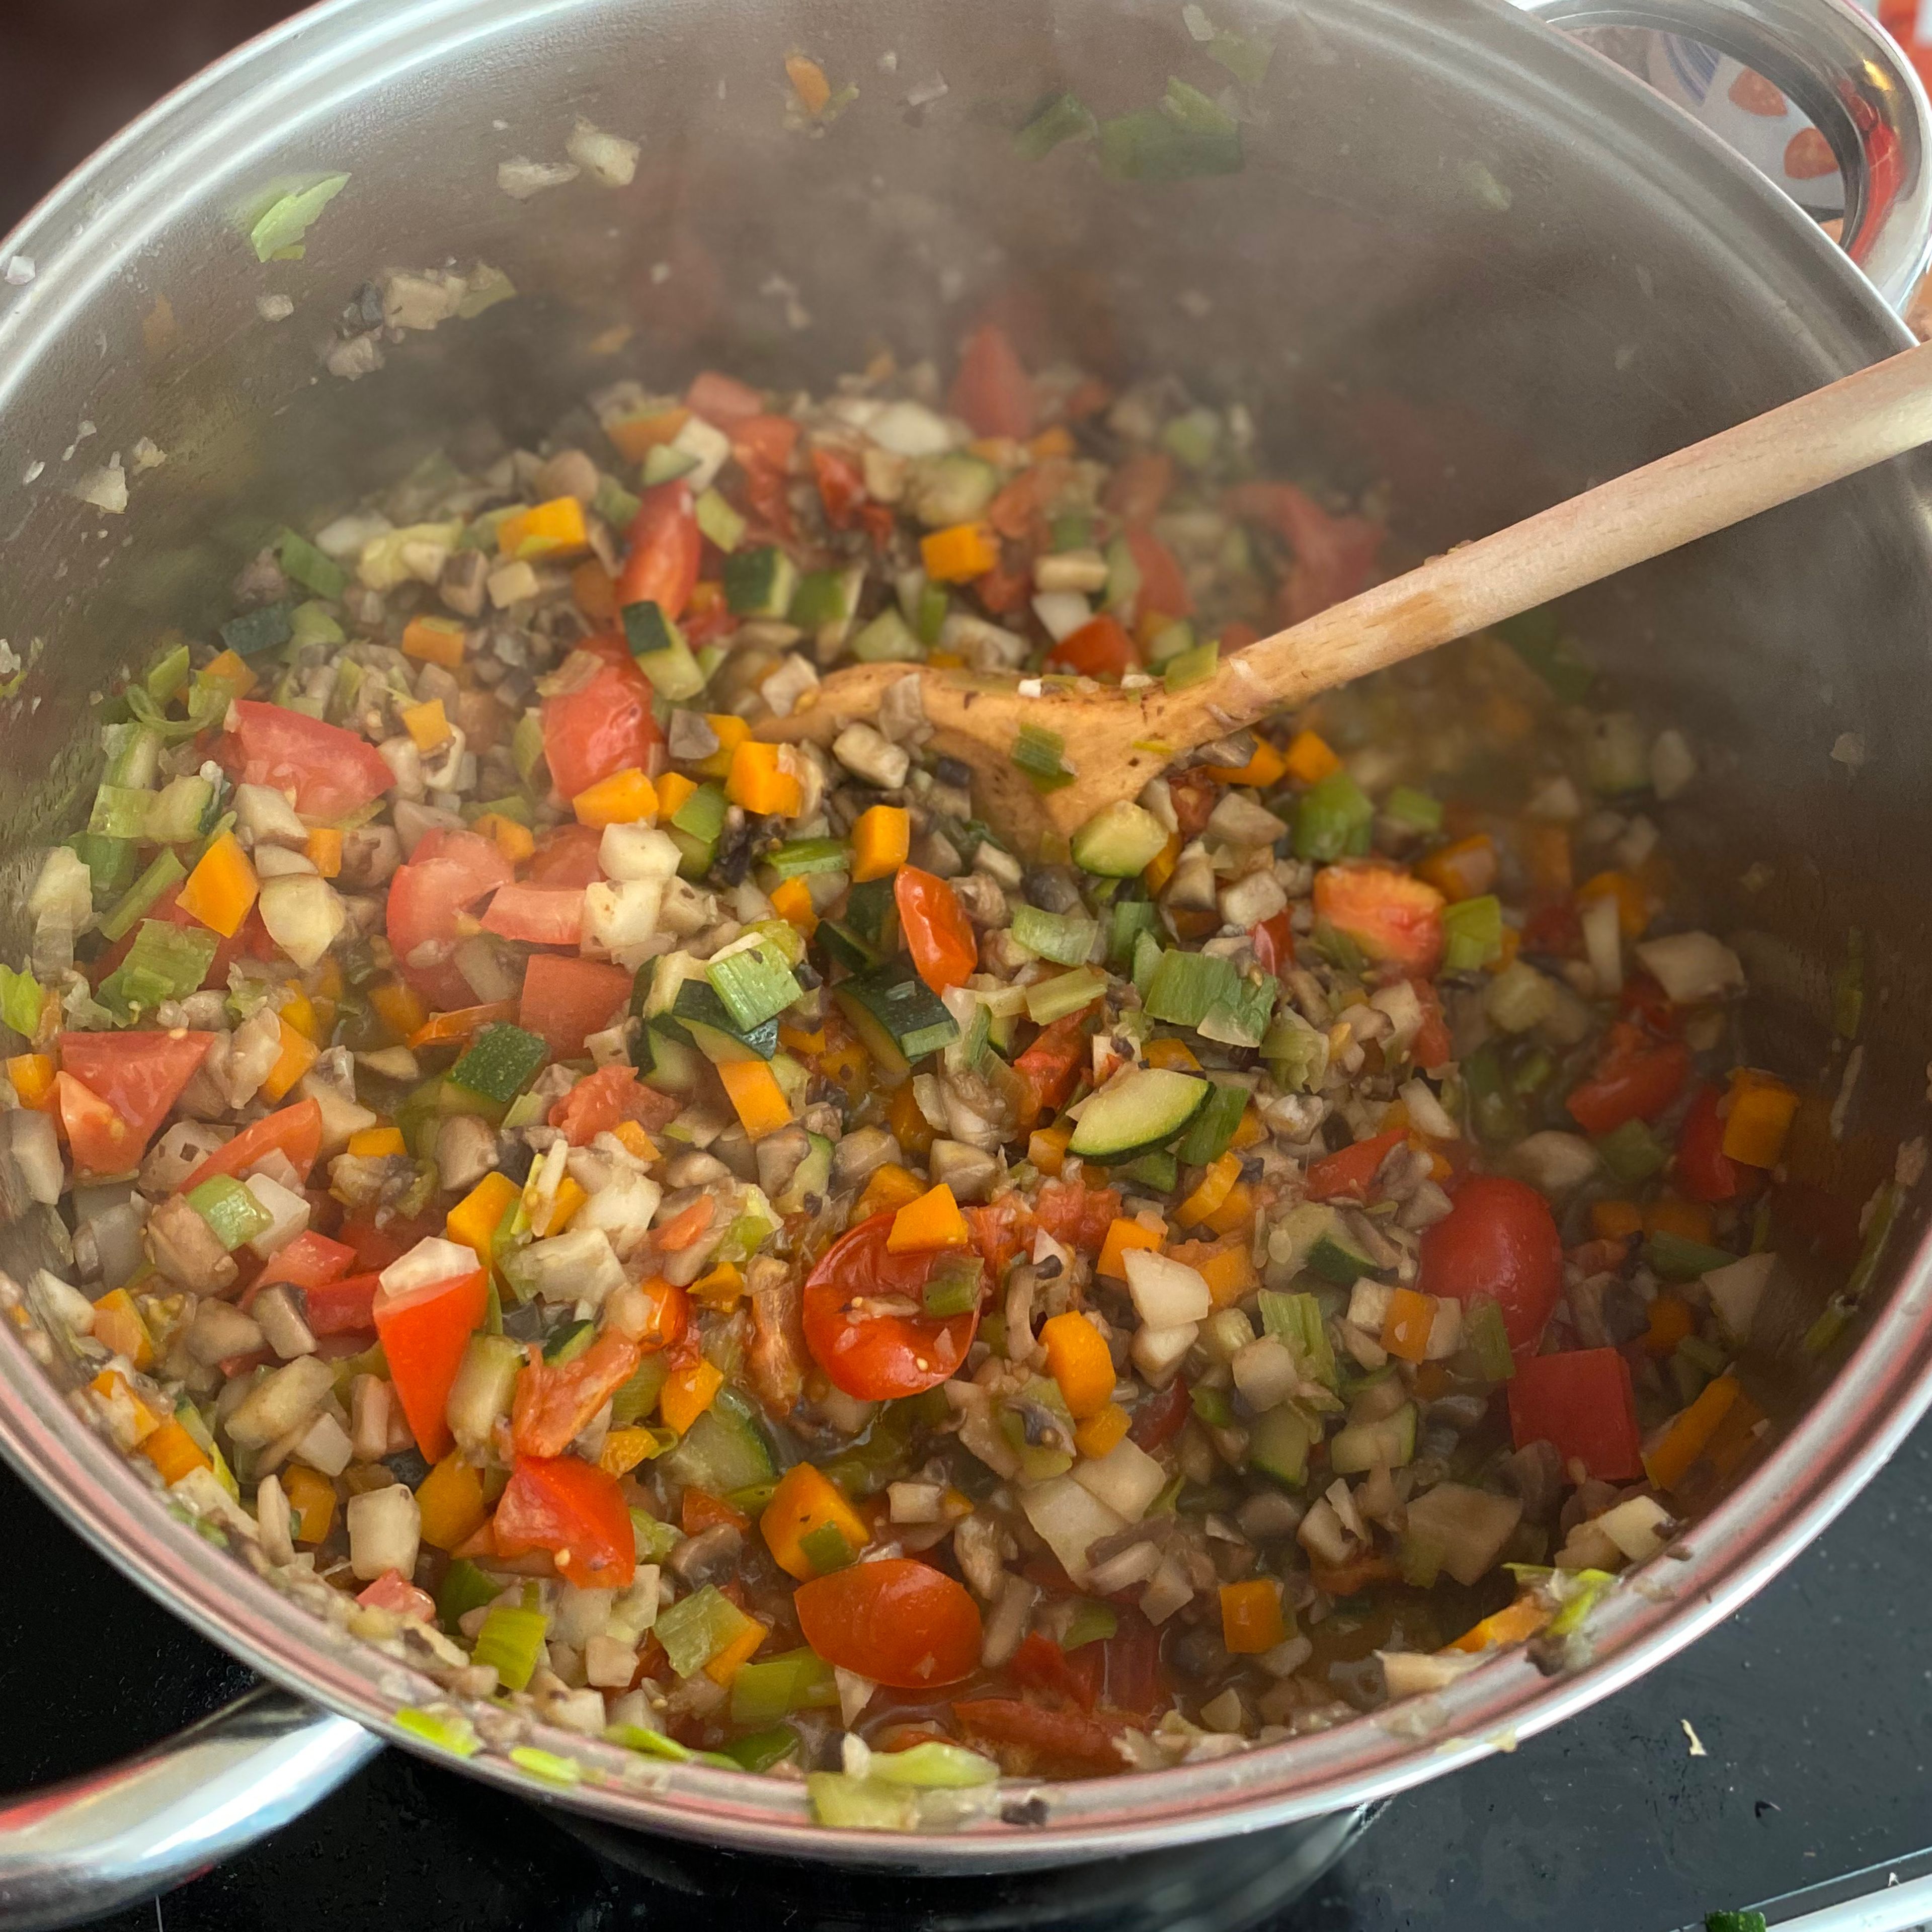 Jetzt kommen noch die frischen Tomaten hinzu. Dann die Gemüsebrühe dazugeben und noch einmal aufkochen lassen, die gehackten und passierten Tomaten hinzufügen. Nun kommen noch die Gewürze hinzu (nach Geschmack). Jetzt lassen wir die Soße bei mittlerer Hitze für ca 1 Stunde köcheln. Dabei den Deckel schräg auflegen. Zwischendurch umrühren.